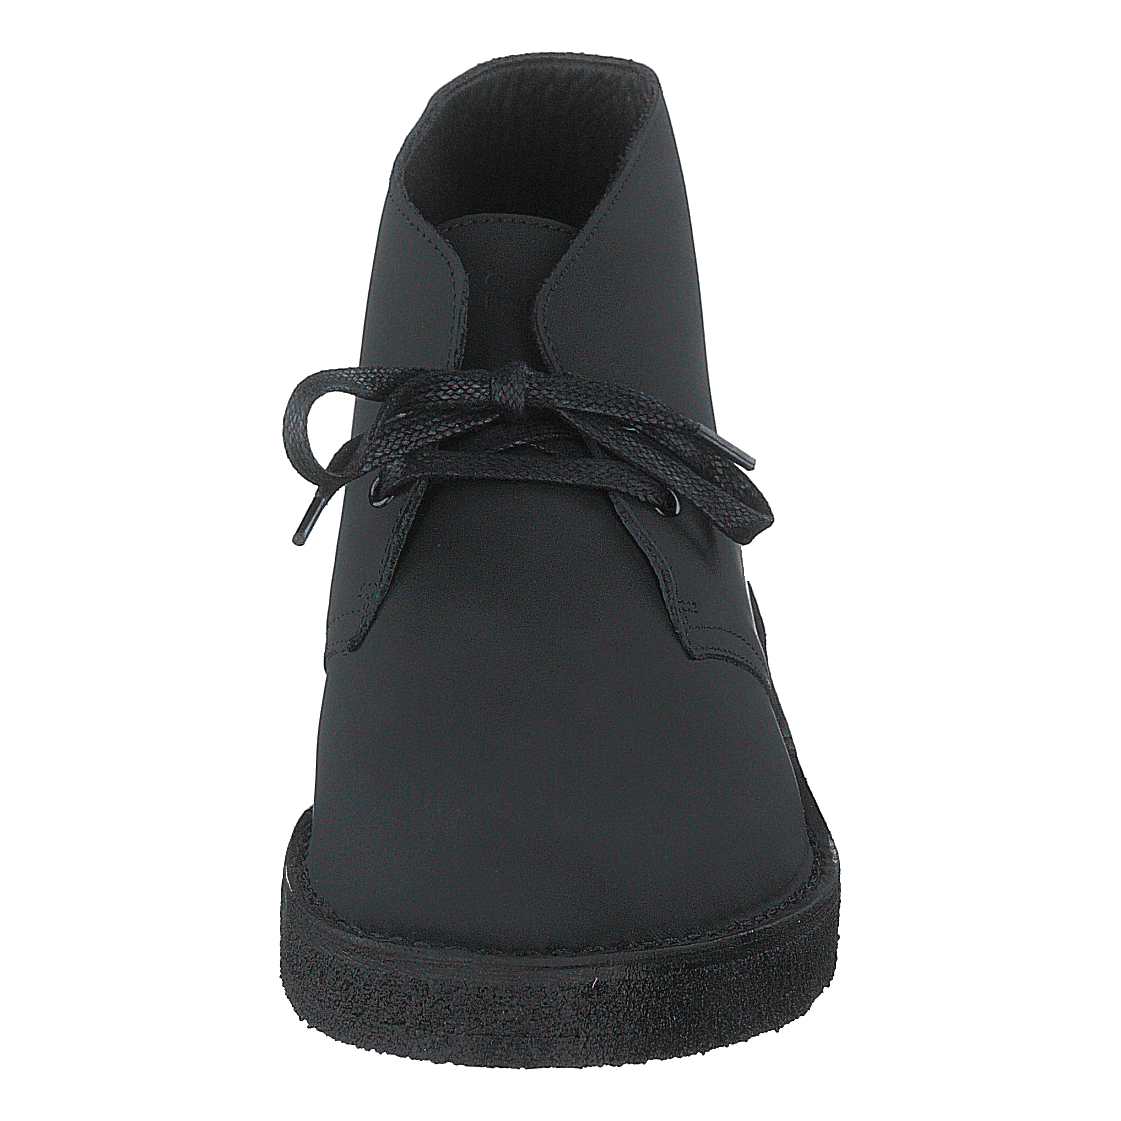 Desert Boot 221 Black Leather